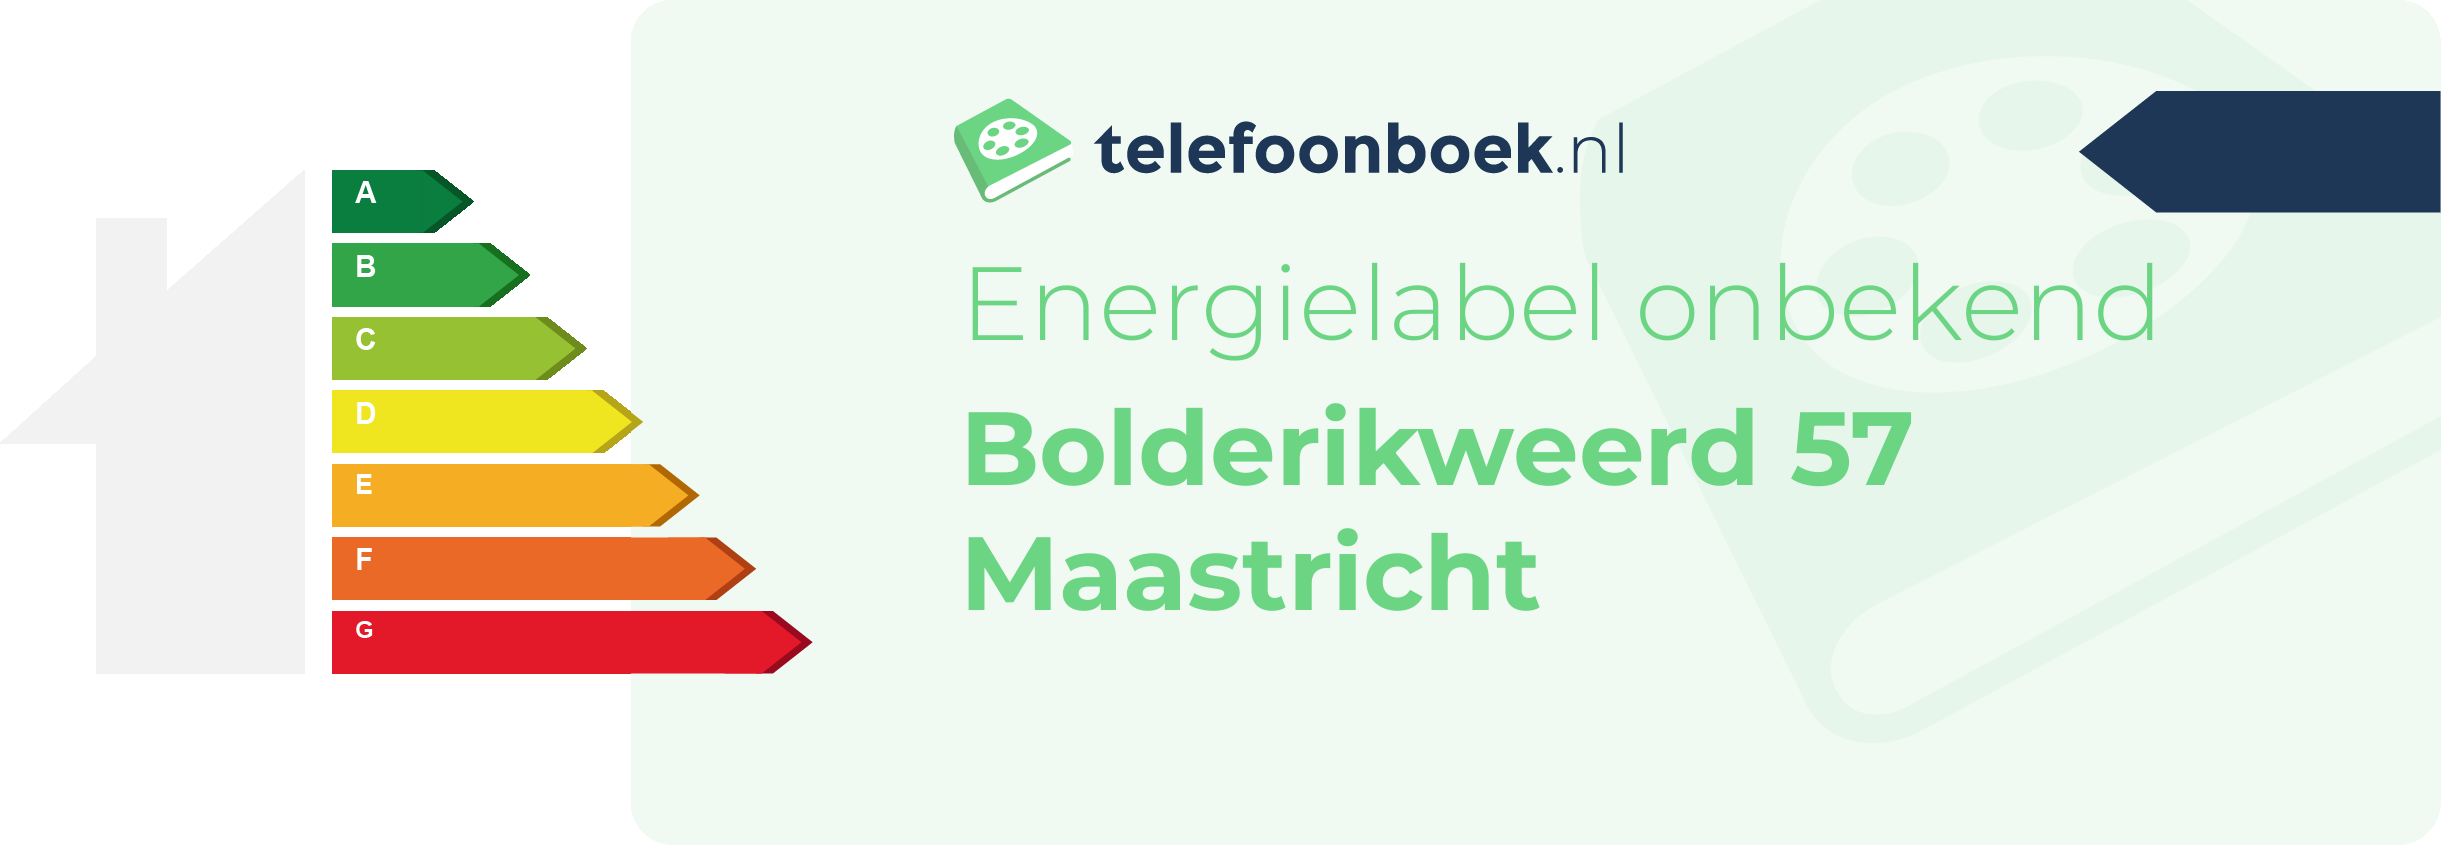 Energielabel Bolderikweerd 57 Maastricht